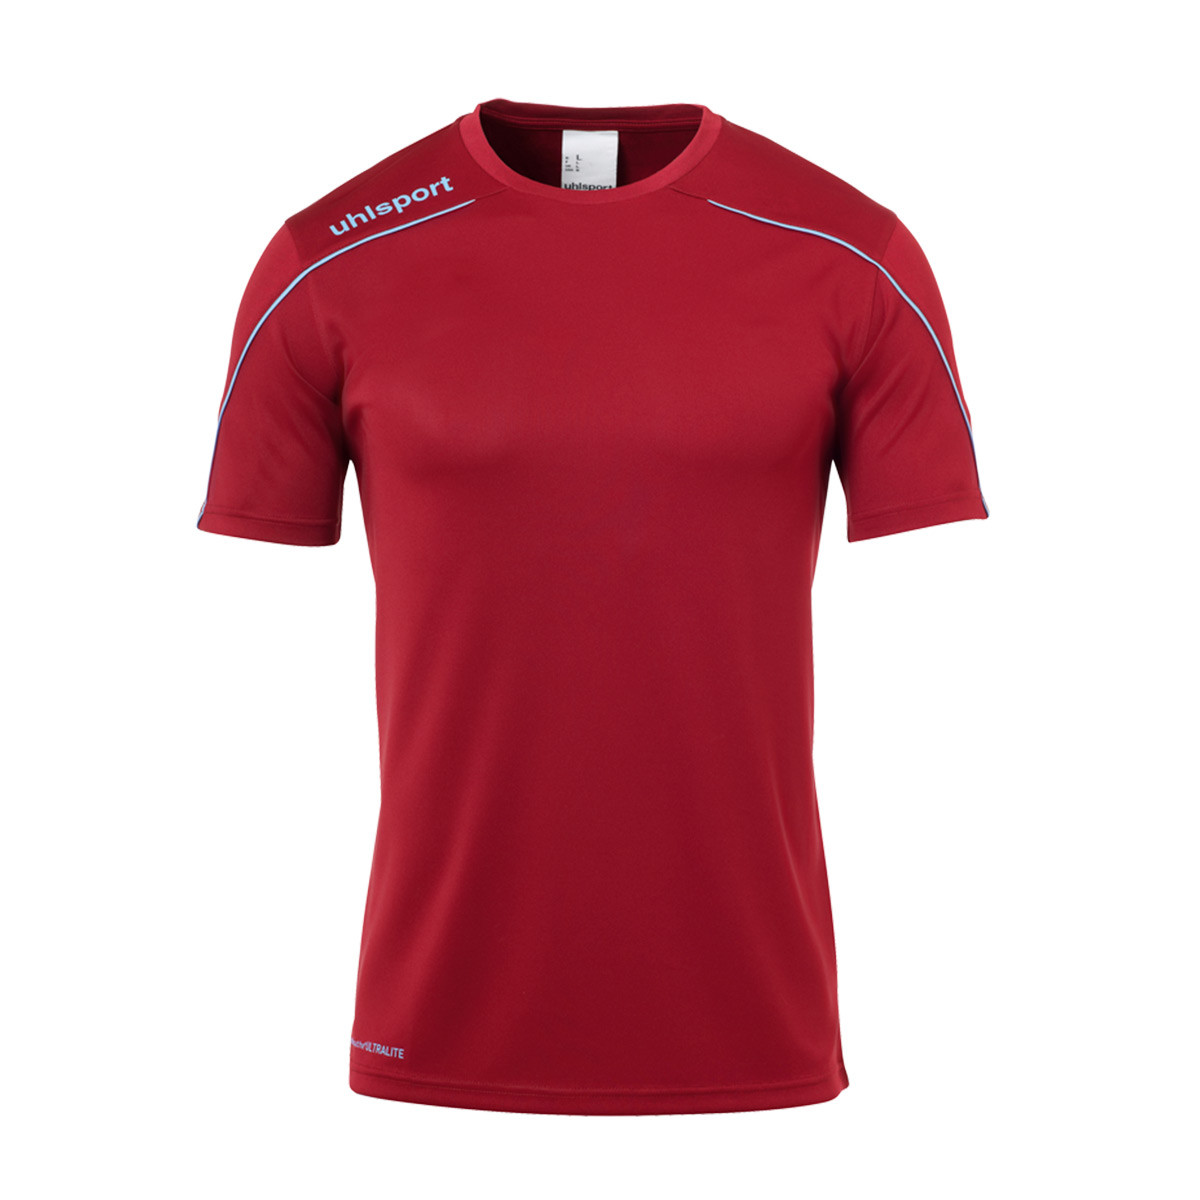 Camiseta Uhlsport Stream 22 m/c Granate-Celeste - Tienda de fútbol Fútbol Emotion